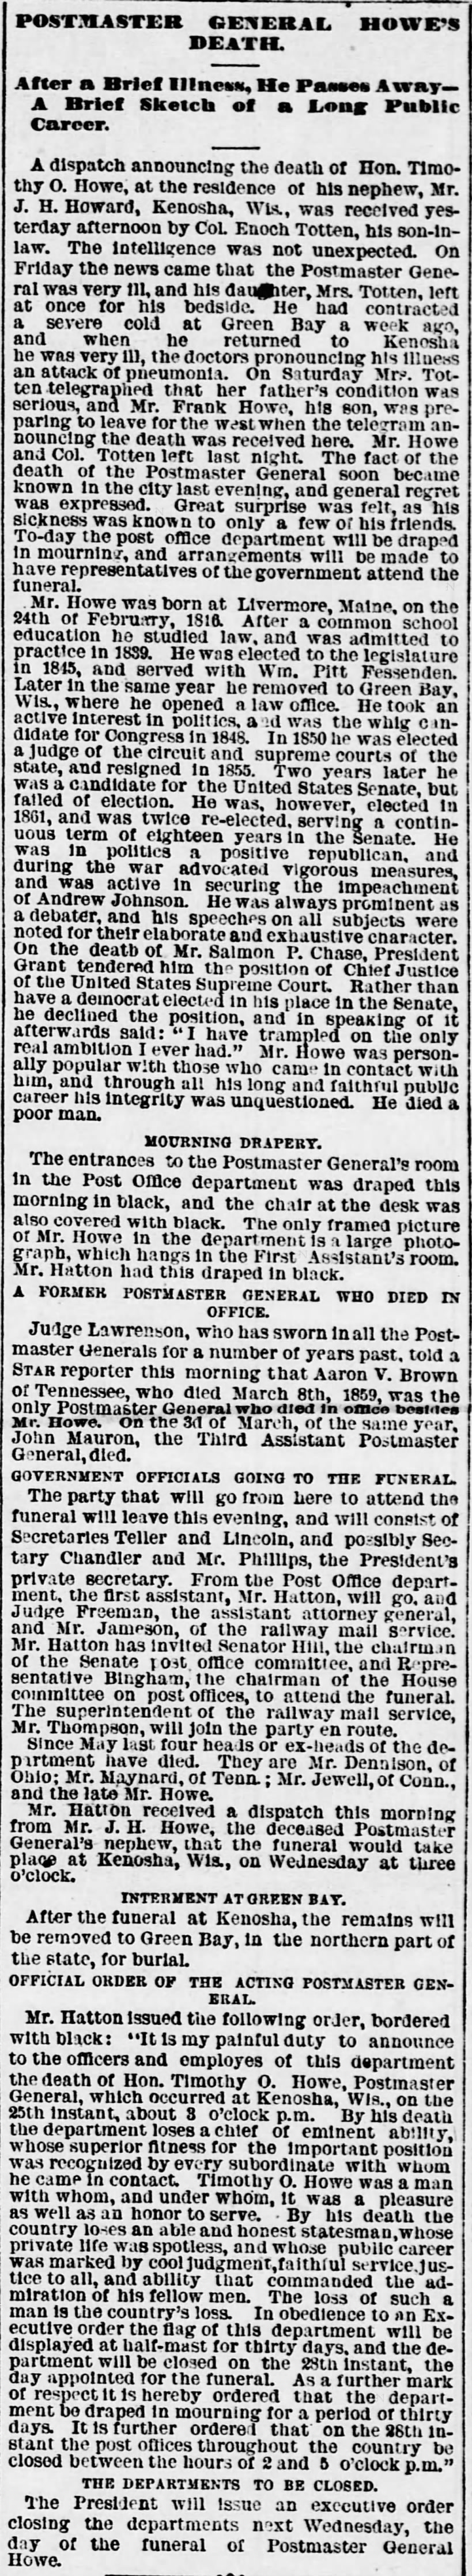 Postmaster General Howe's Death